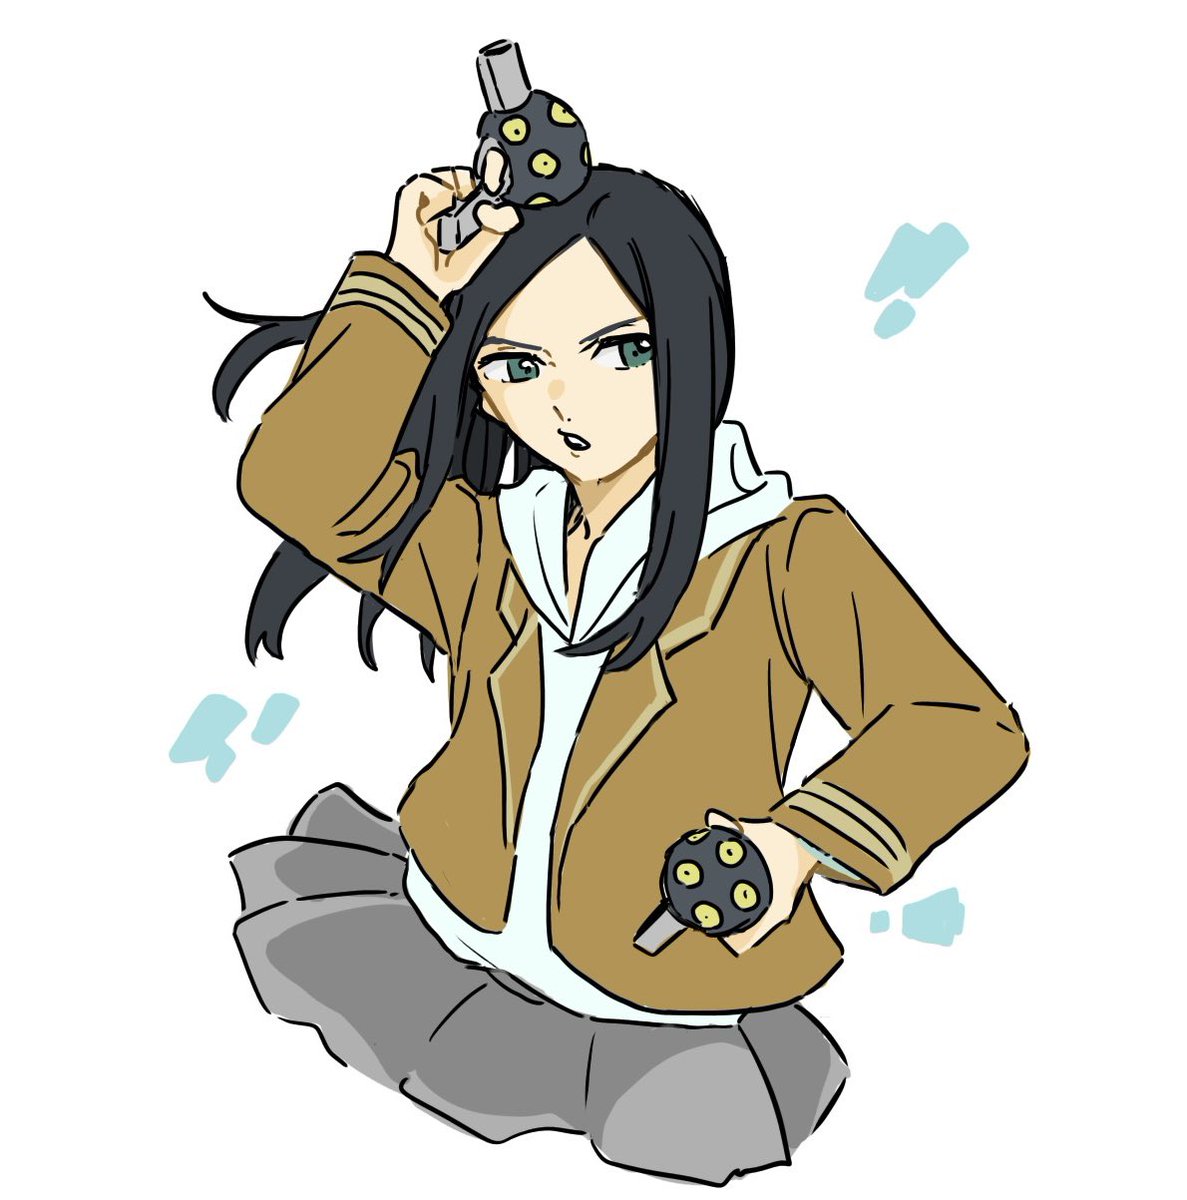 1girl black hair weapon solo skirt gun jacket  illustration images